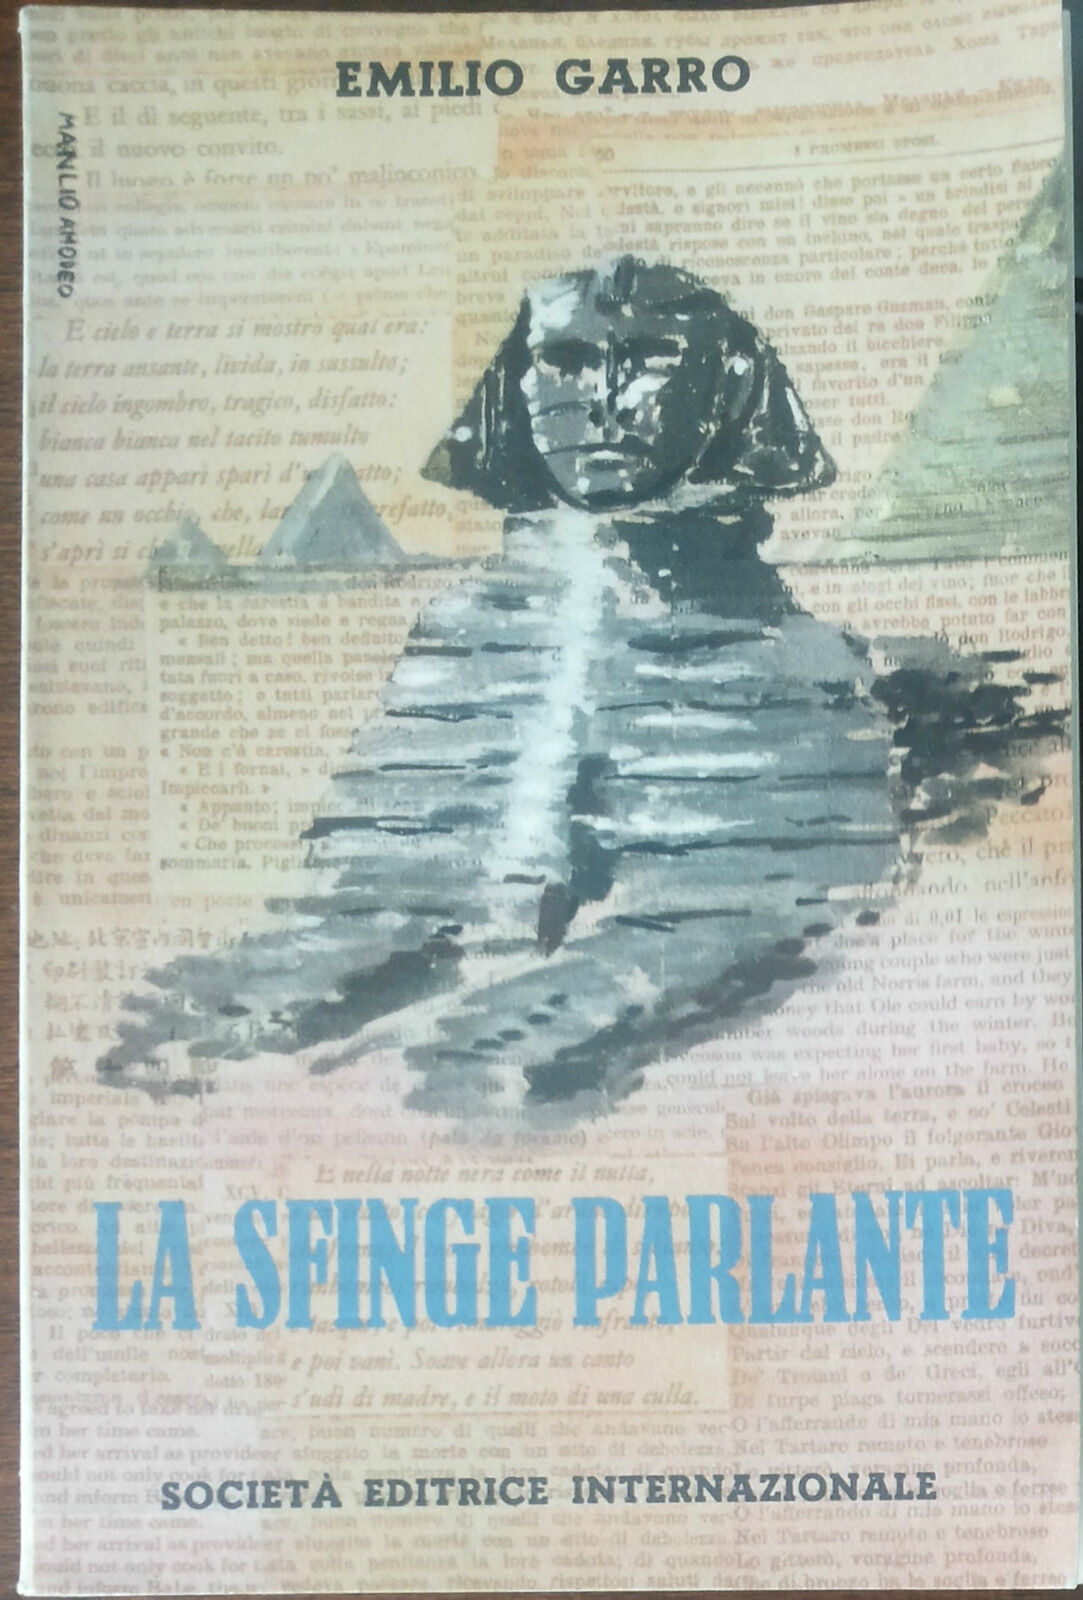 La sfinge parlante - Emilio Garro - Societ? editrice internazionale,1955 - A